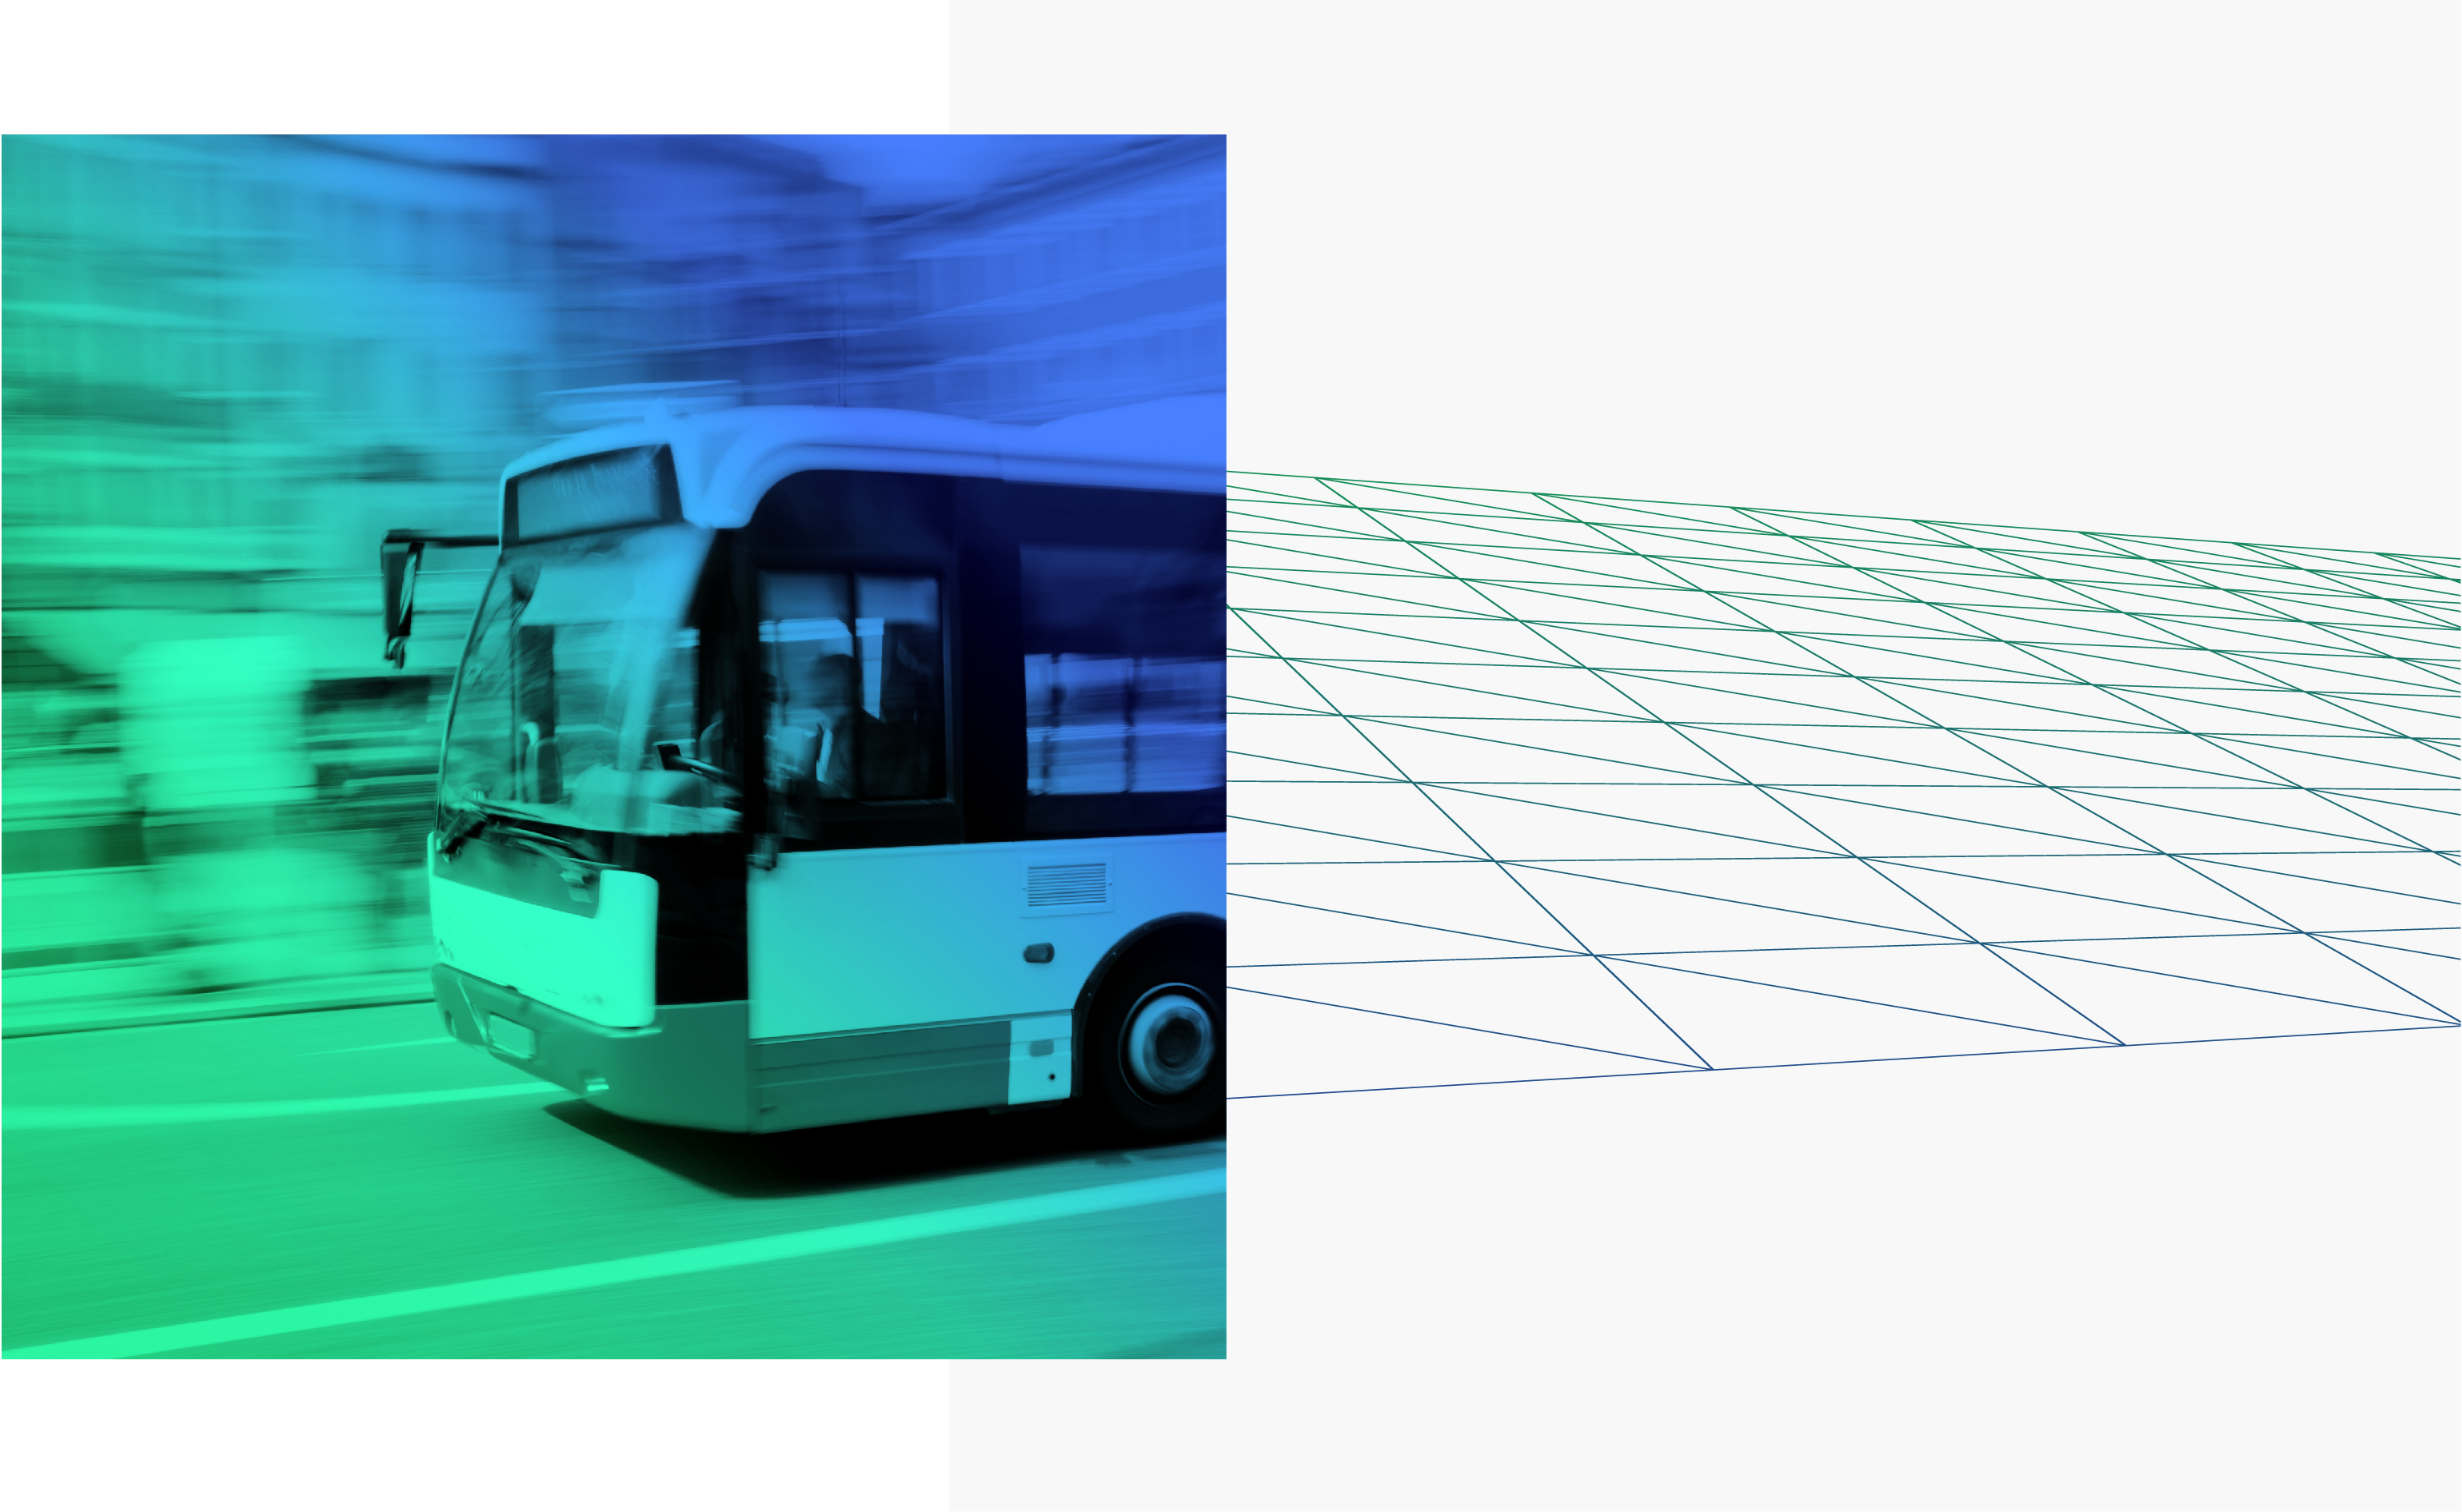  ГТЛК успешно выполнила дополнительную поставку общественного транспорта по нацпроекту БКД на 2021 год